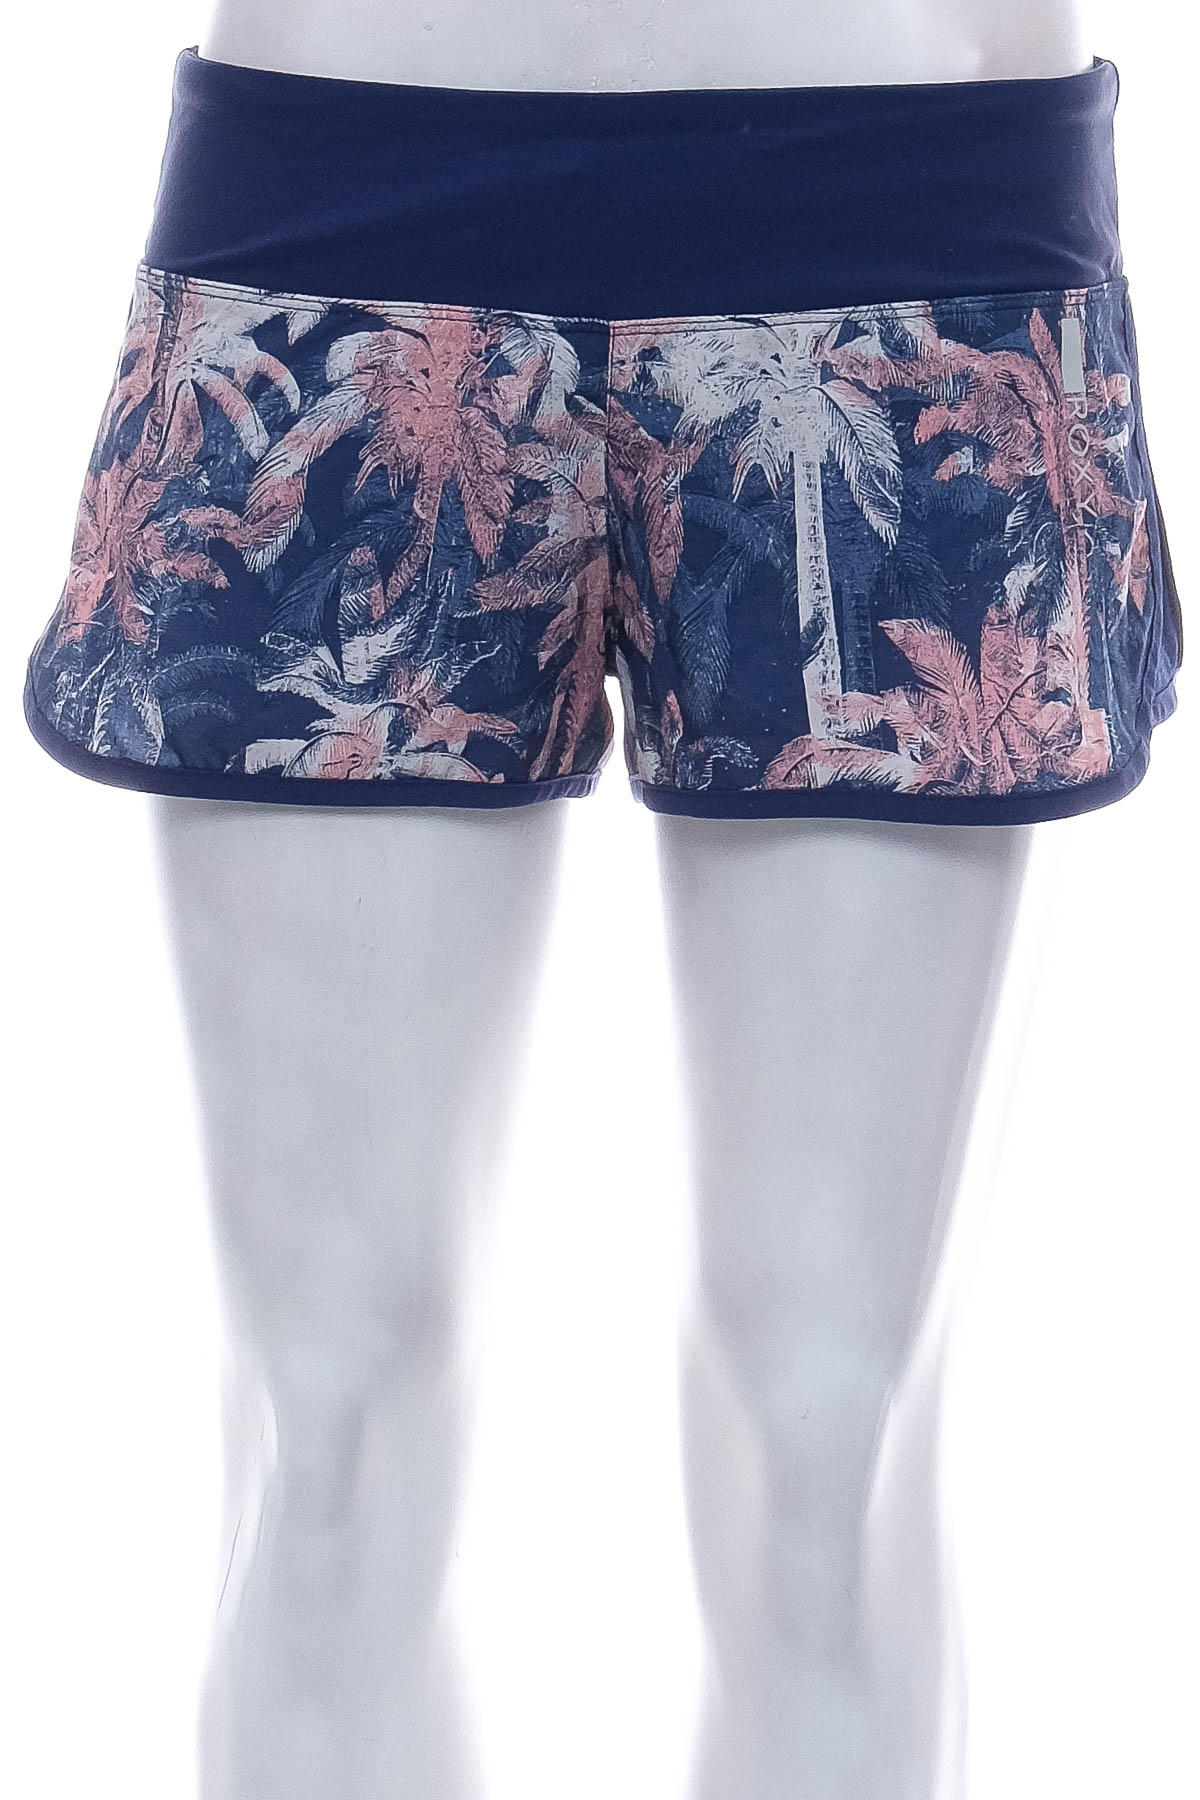 Women's shorts - ROXY - 0